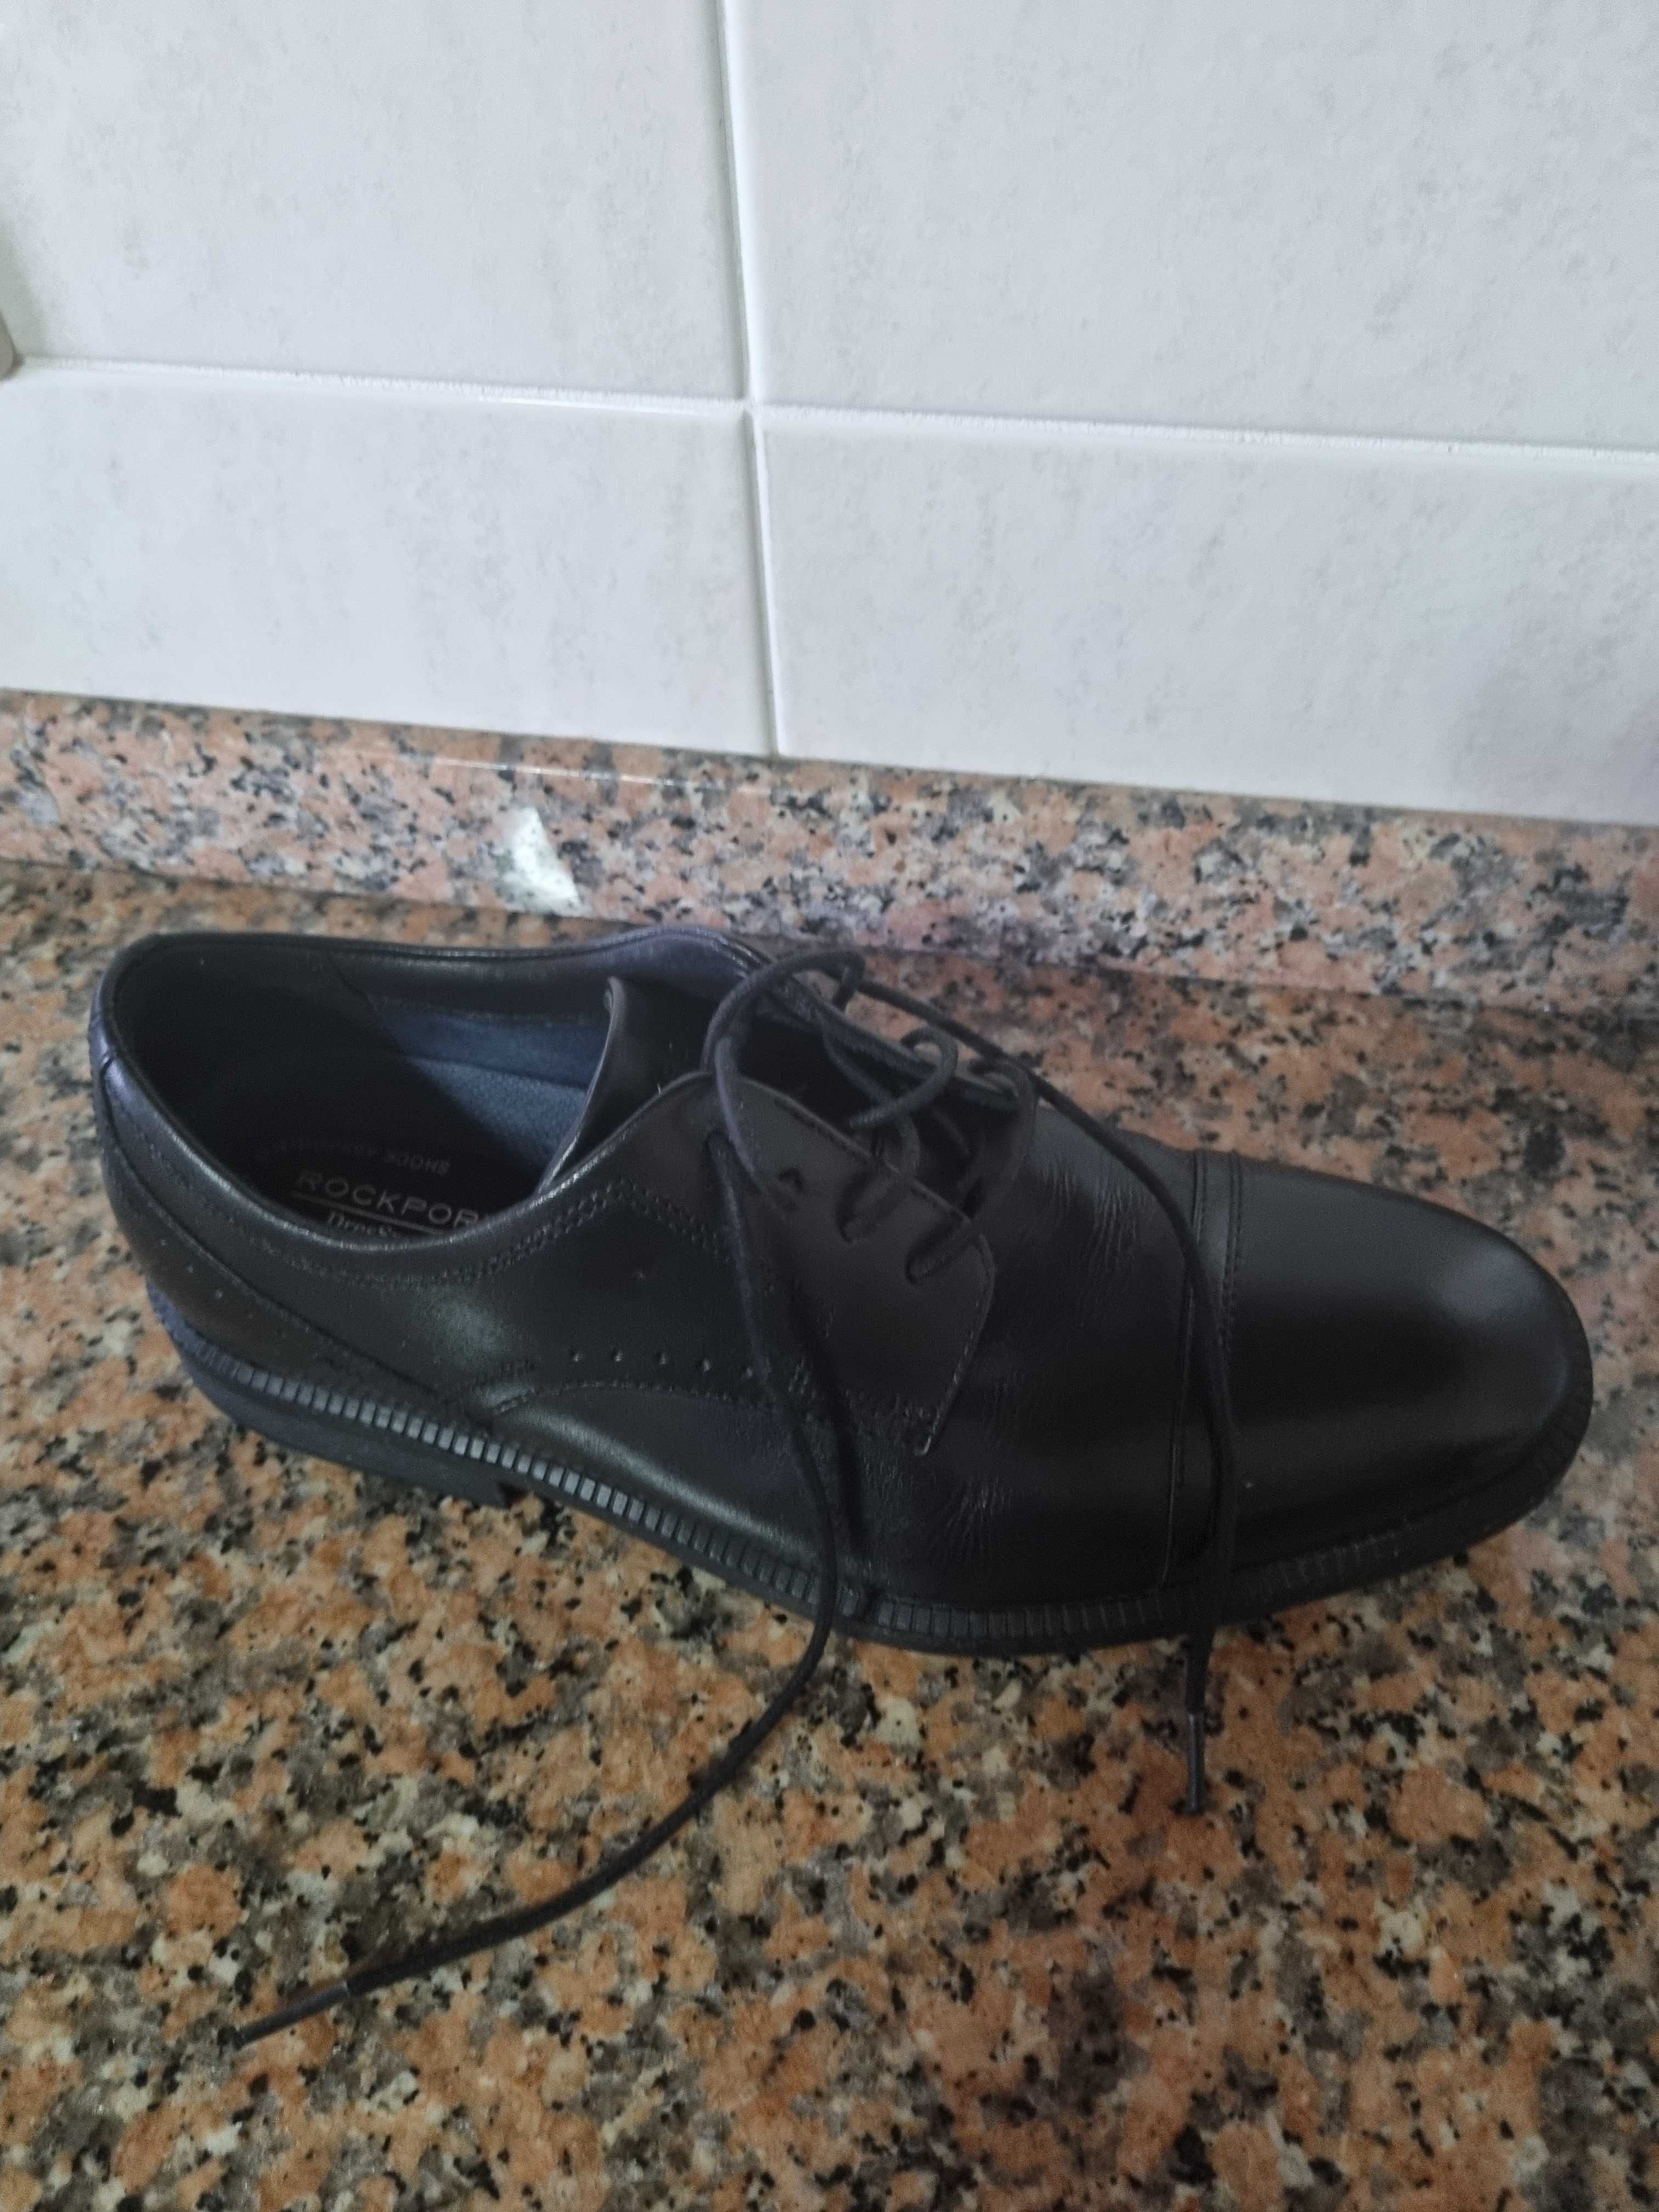 Sapatos Homem Rockport Pretos N°42